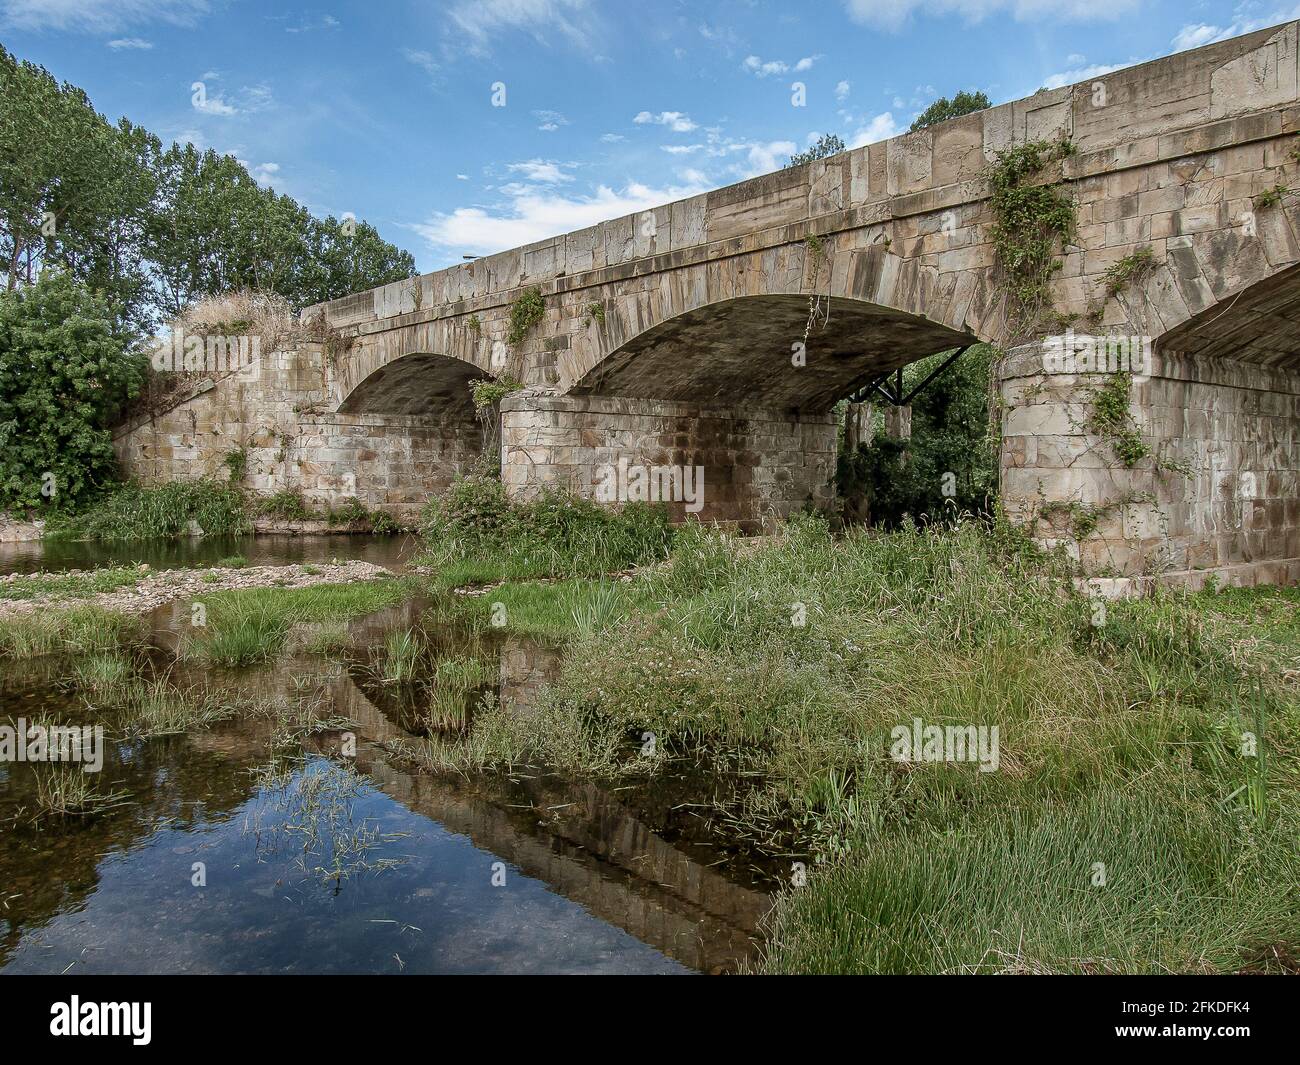 Puente de Orbigo im Fluss im Hospital de Orbigo, Spanien, 16. Juli 2010 Stockfoto